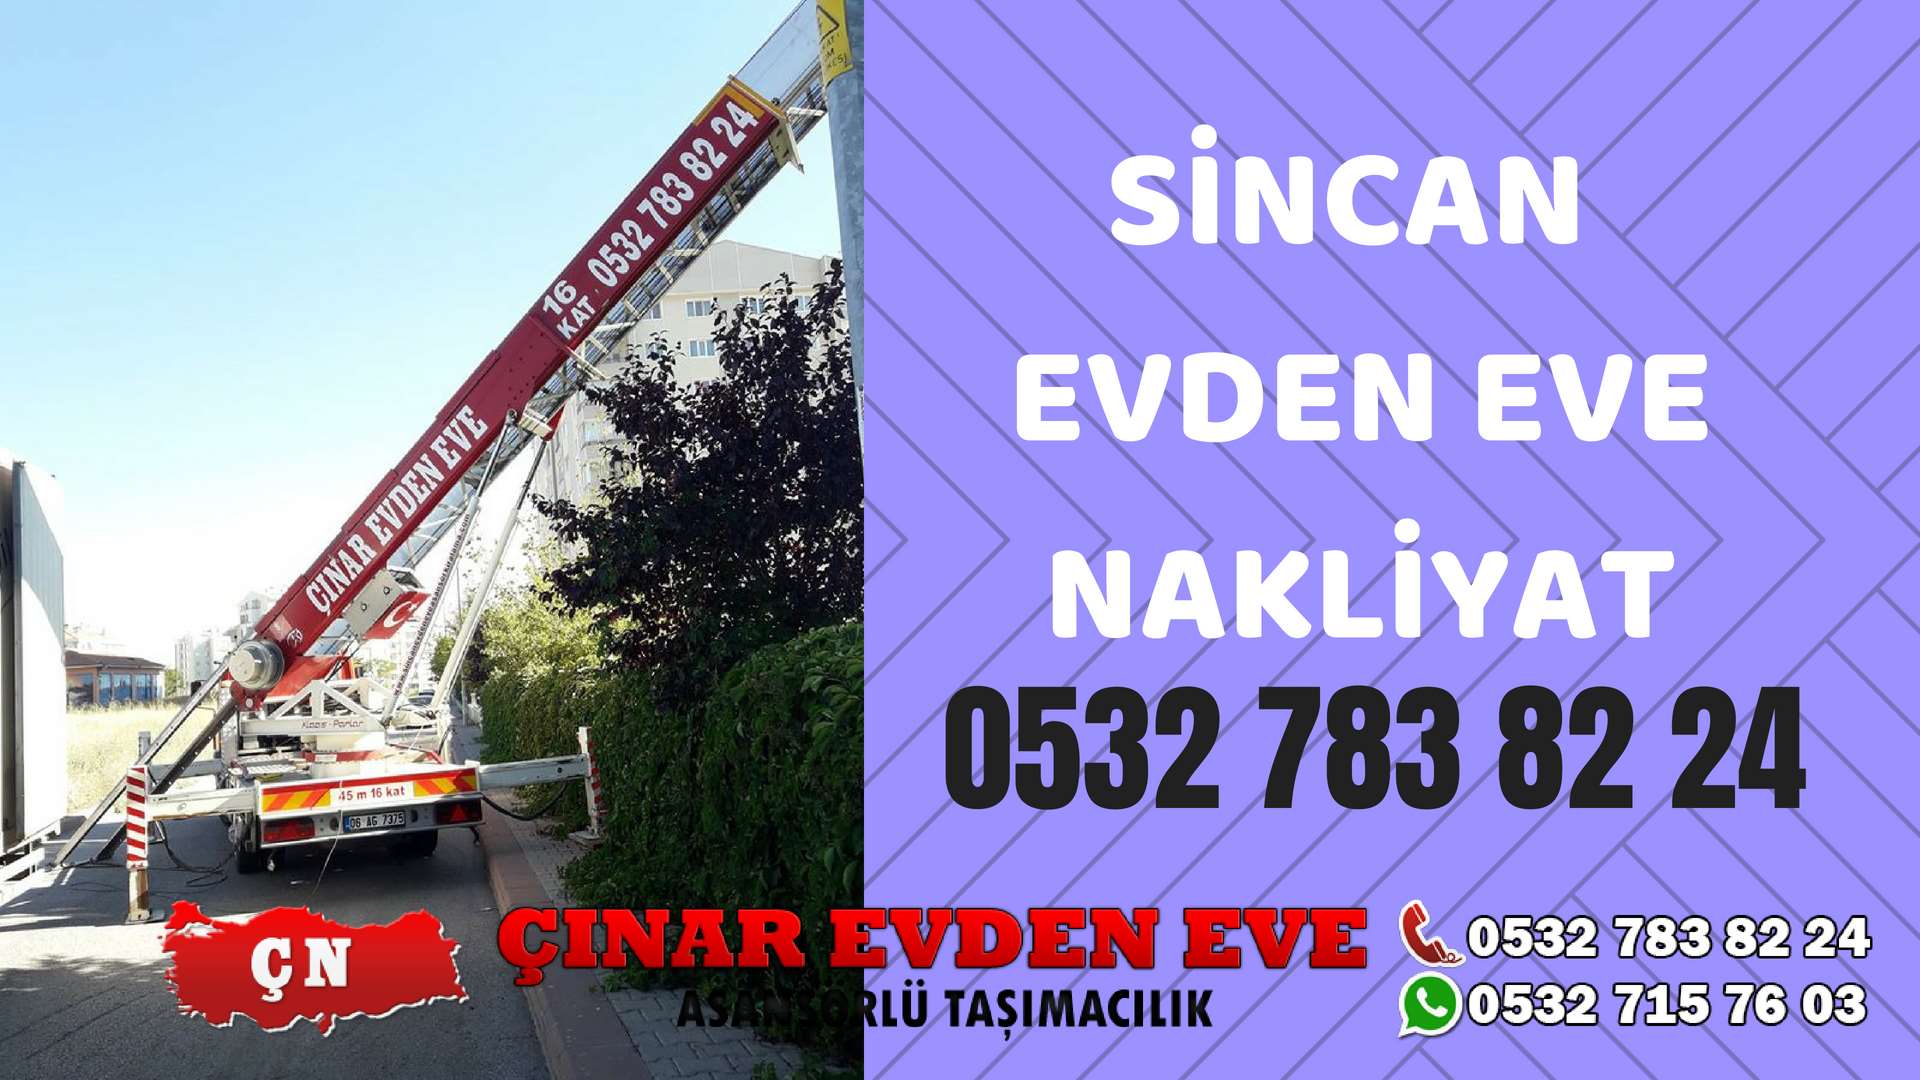 Ankara Sincan Sincan Evden Eve Nakliyat, Asansörlü Taşıma Çınar Nakliyat Sincan 0532 715 76 03